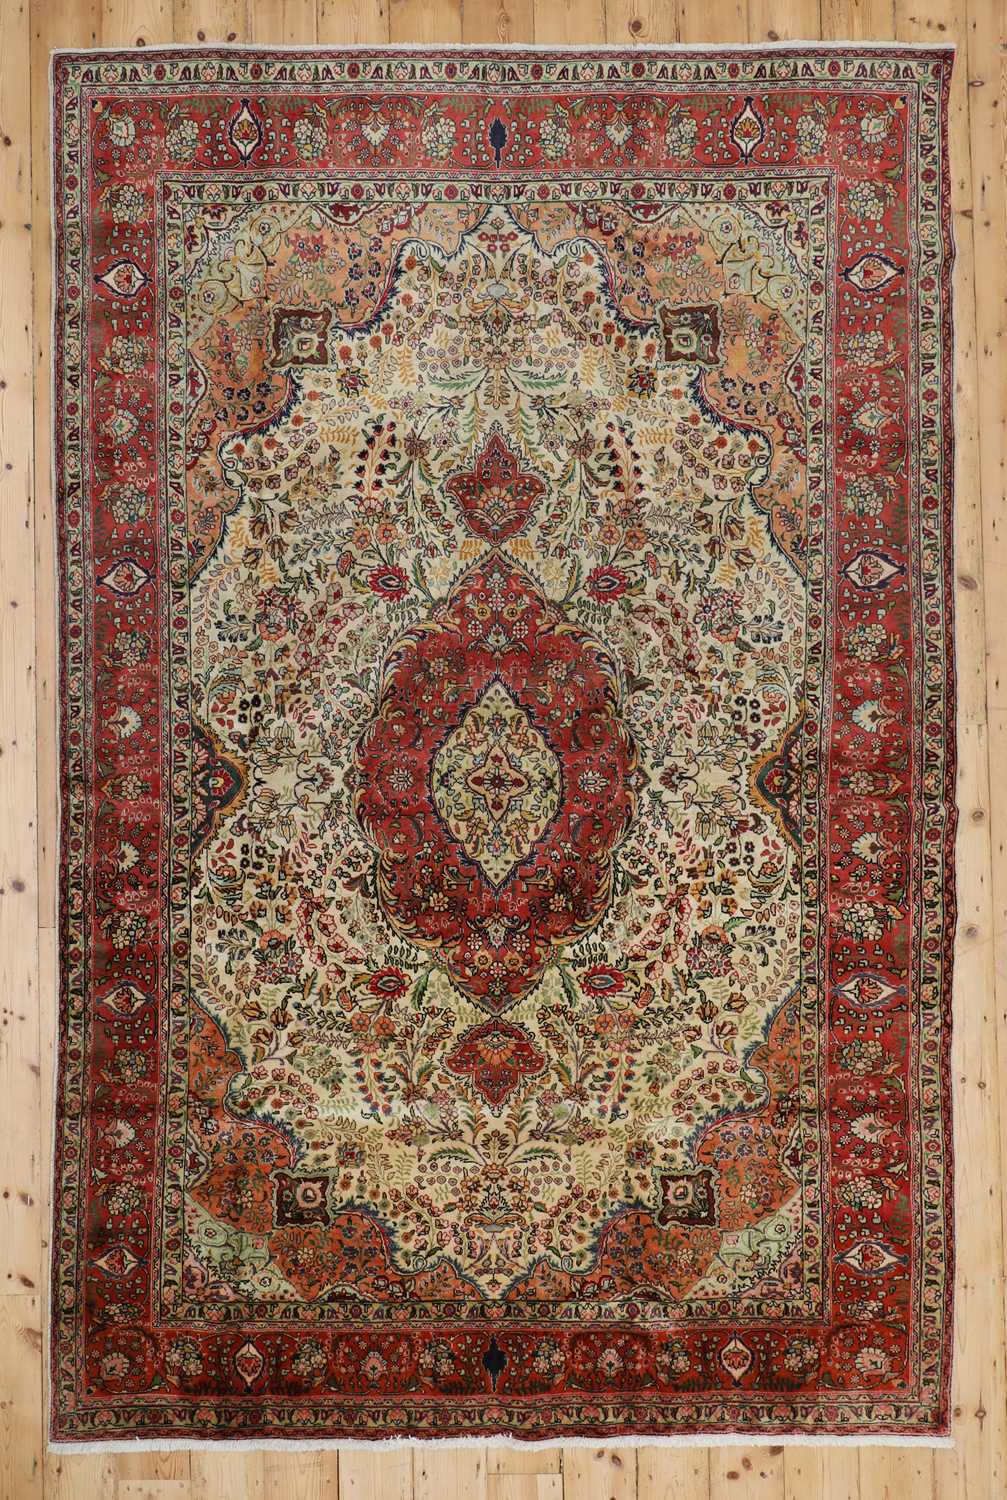 Lot 365 - A Persian wool carpet